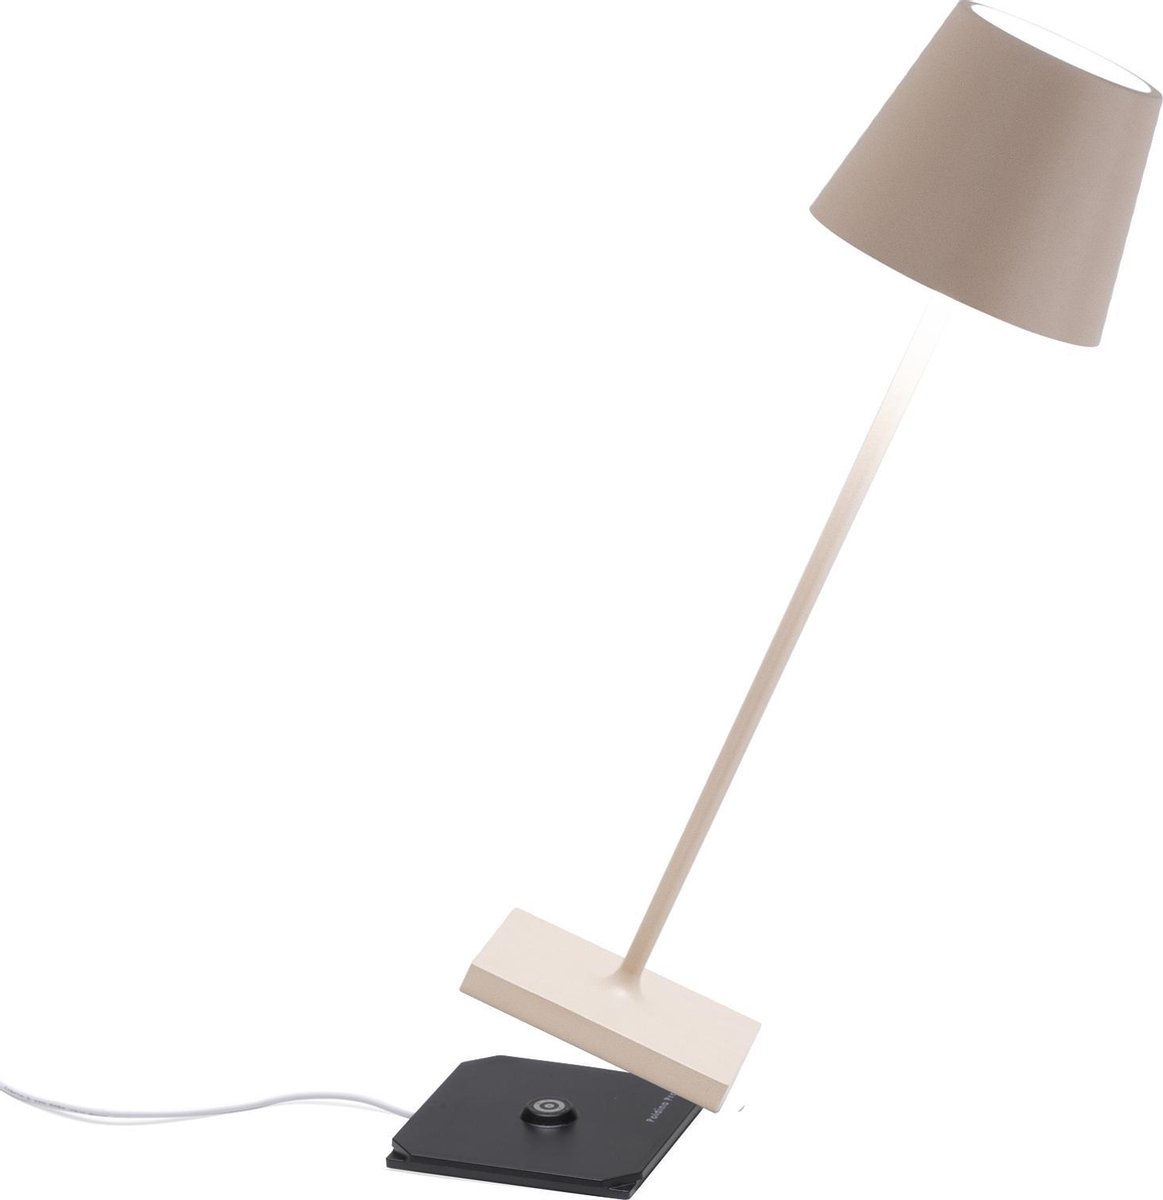 Zafferano - Poldina Pro hoog - Zand Kleur - H38cm - Ledlamp - Terraslamp - Bureaulamp – Tafellamp – Snoerloos – Verplaatsbaar – Duurzaam - Voor binnen en buiten – LED - Dimbaar - 3000K – IP54 Spat Waterdicht - USB oplaadbaar